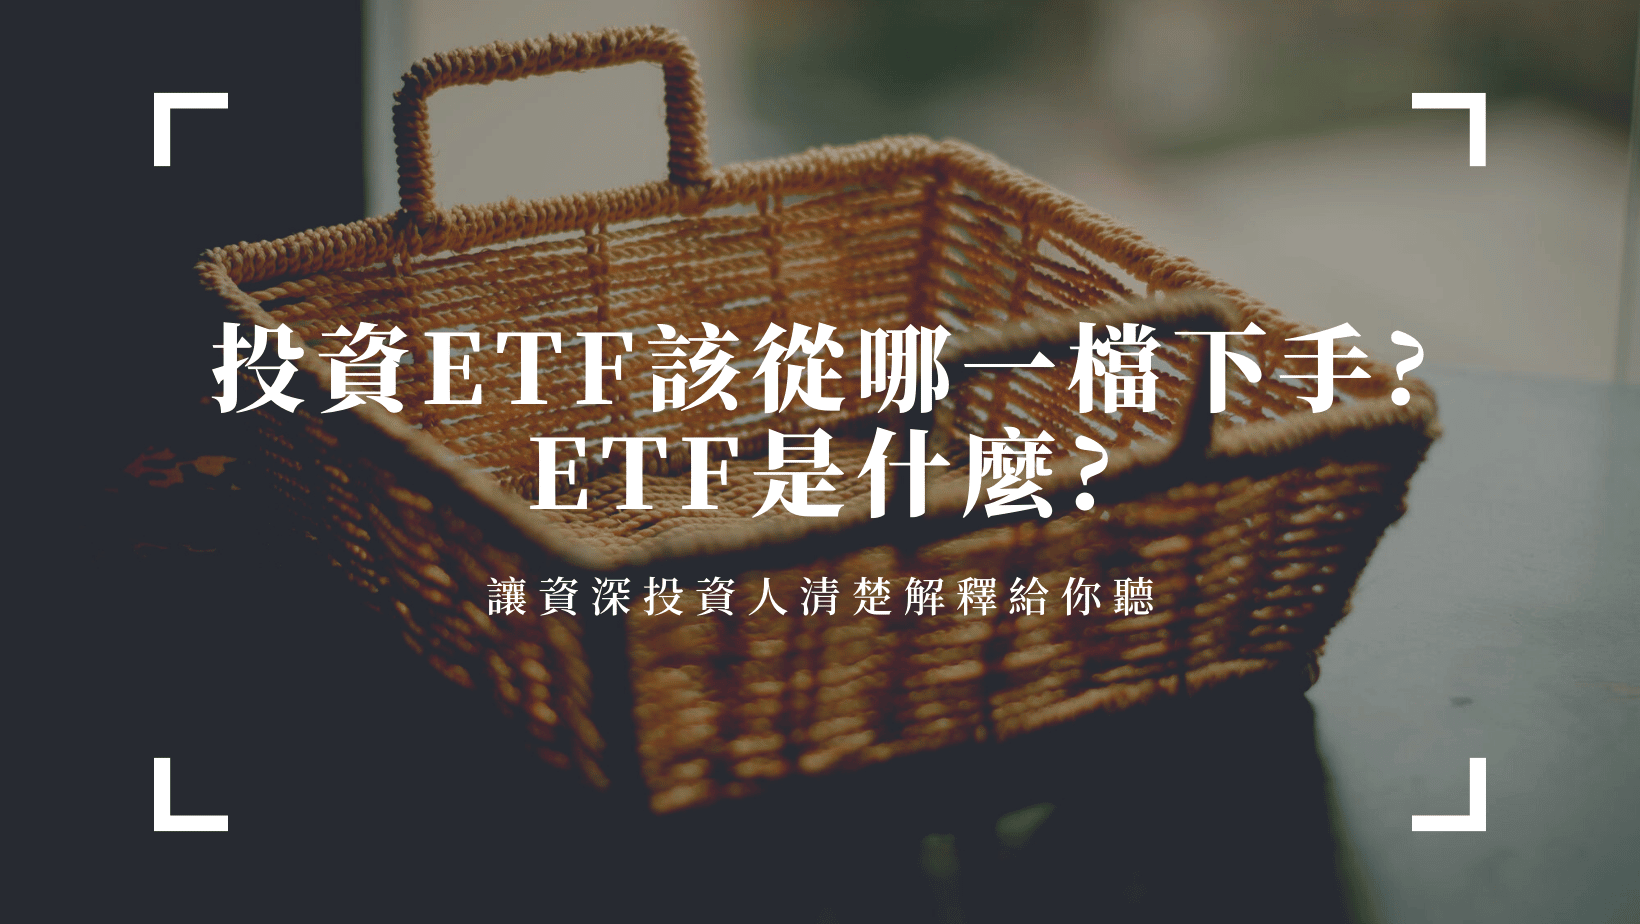 ETF是什麼?